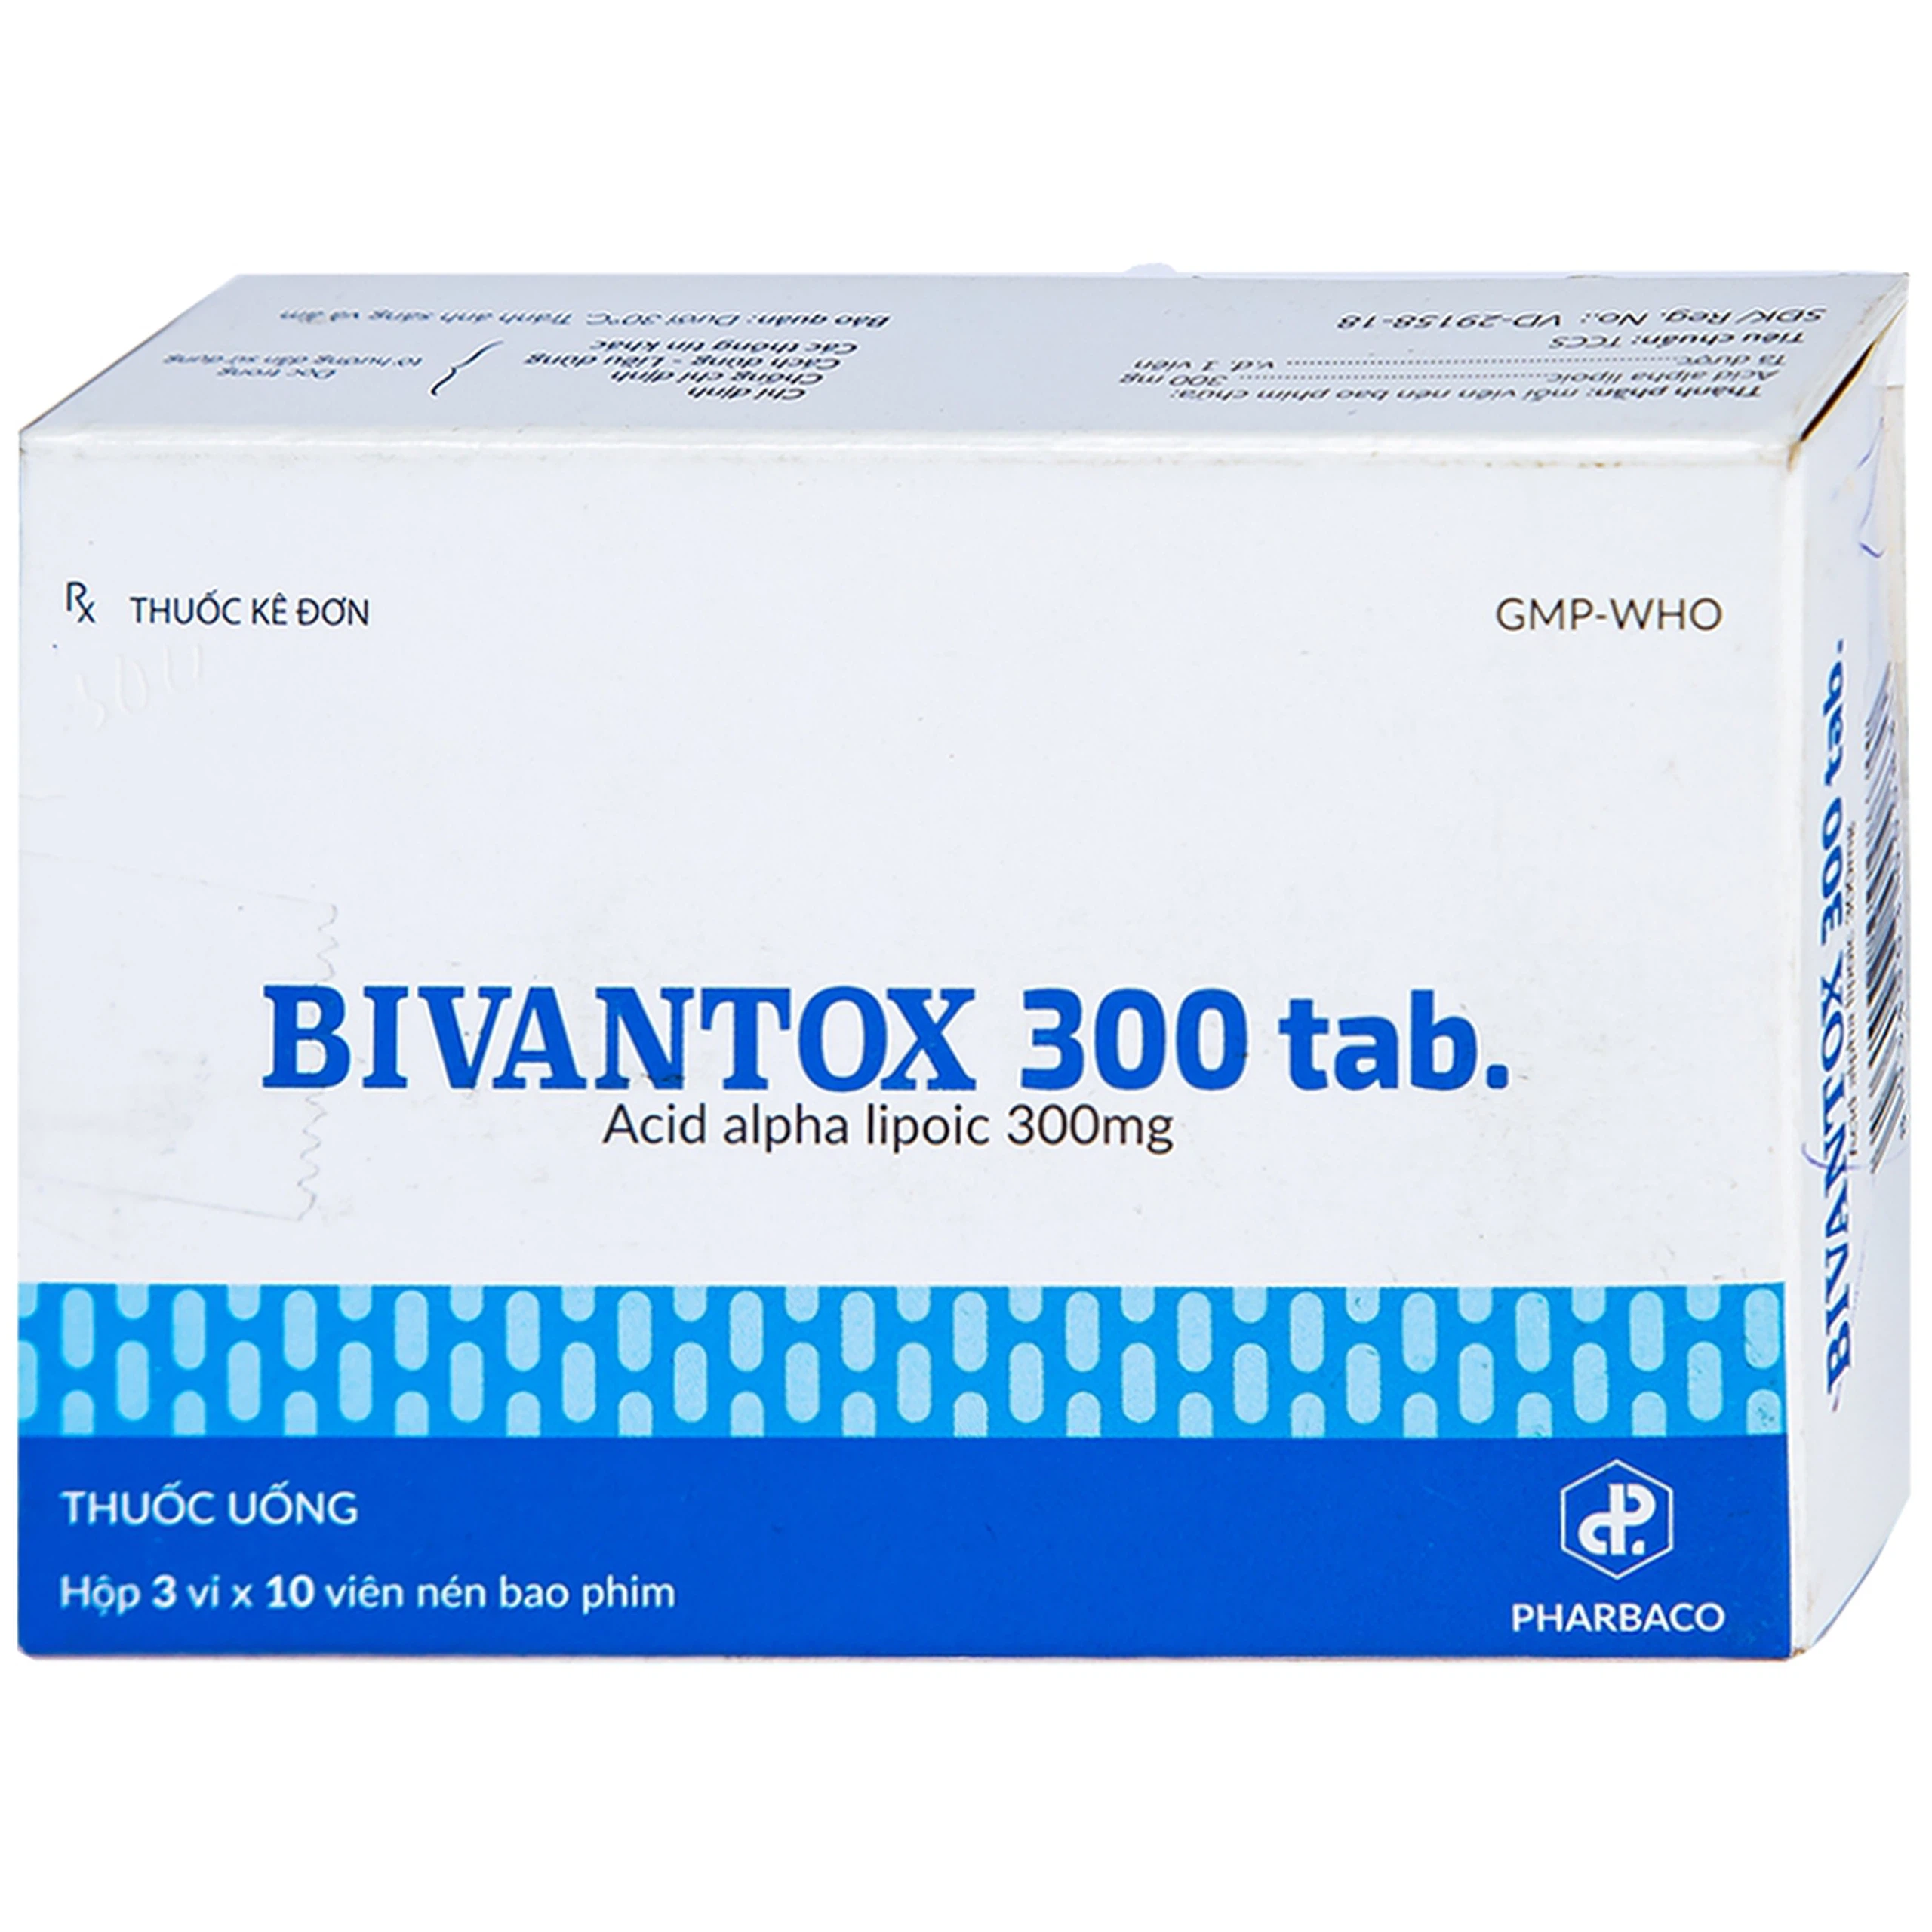 Thuốc uống Bivantox 300 Pharbaco hỗ trợ điều trị rối loạn cảm giác ở những bệnh nhân đái tháo đường (3 vỉ x 10 viên)